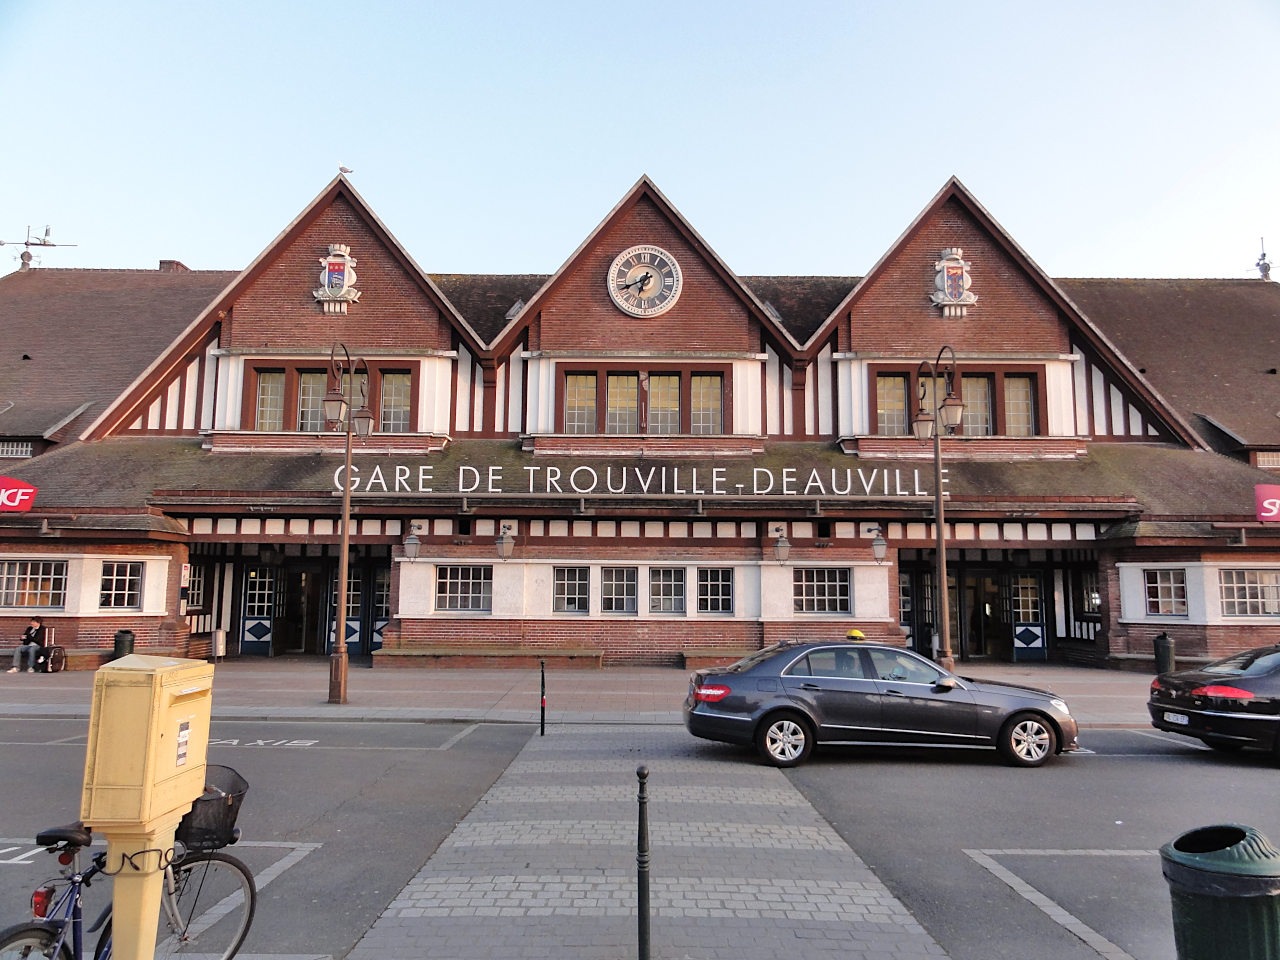 gare de Deauville-Trouville